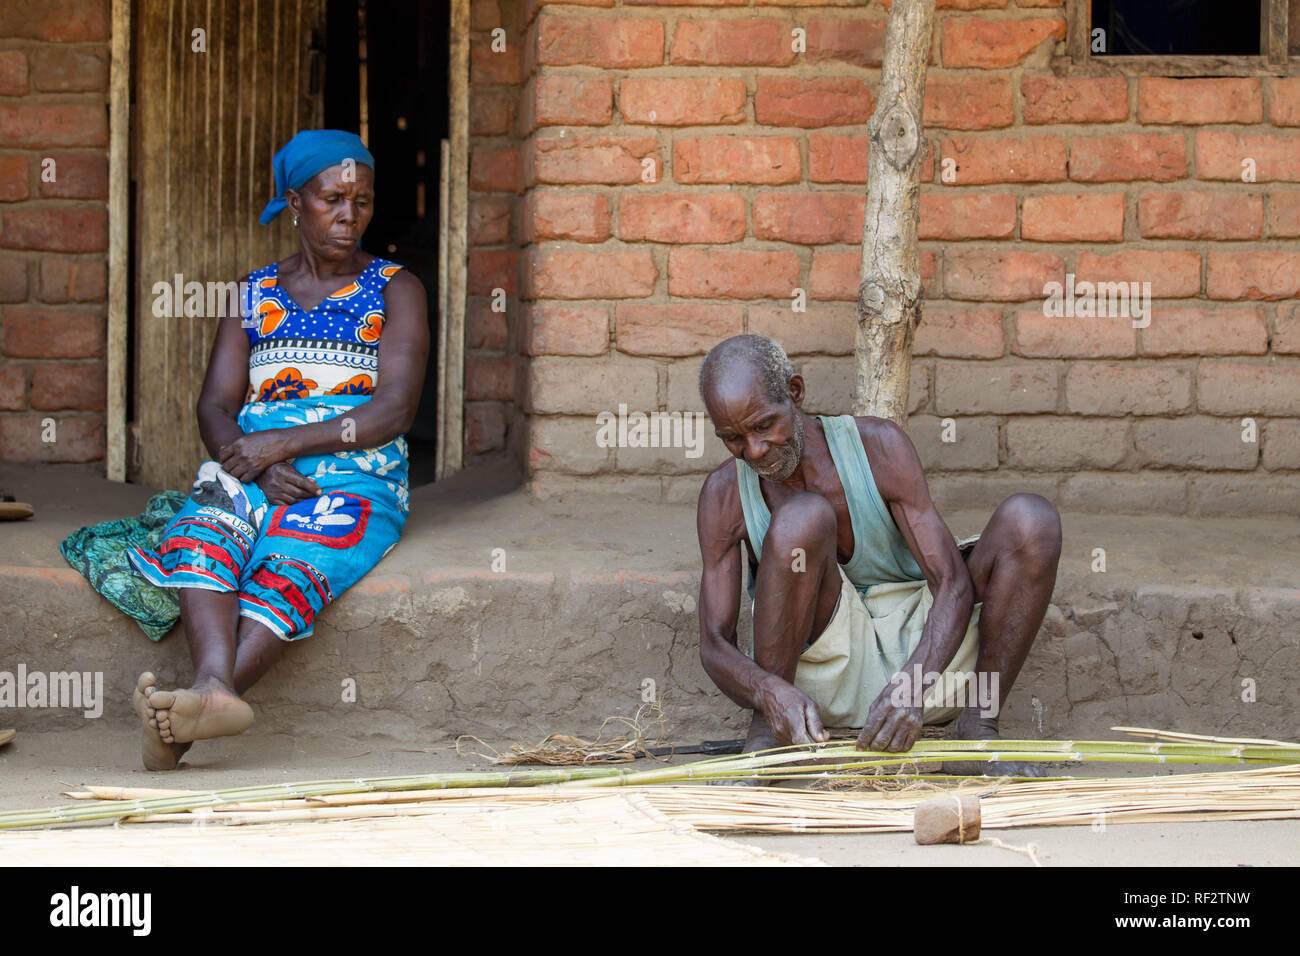 Un homme tisse un tapis de roseaux en utilisant la technique traditionnelle dans un village de Chikwawa, Malawi comme sa femme regarde. Banque D'Images